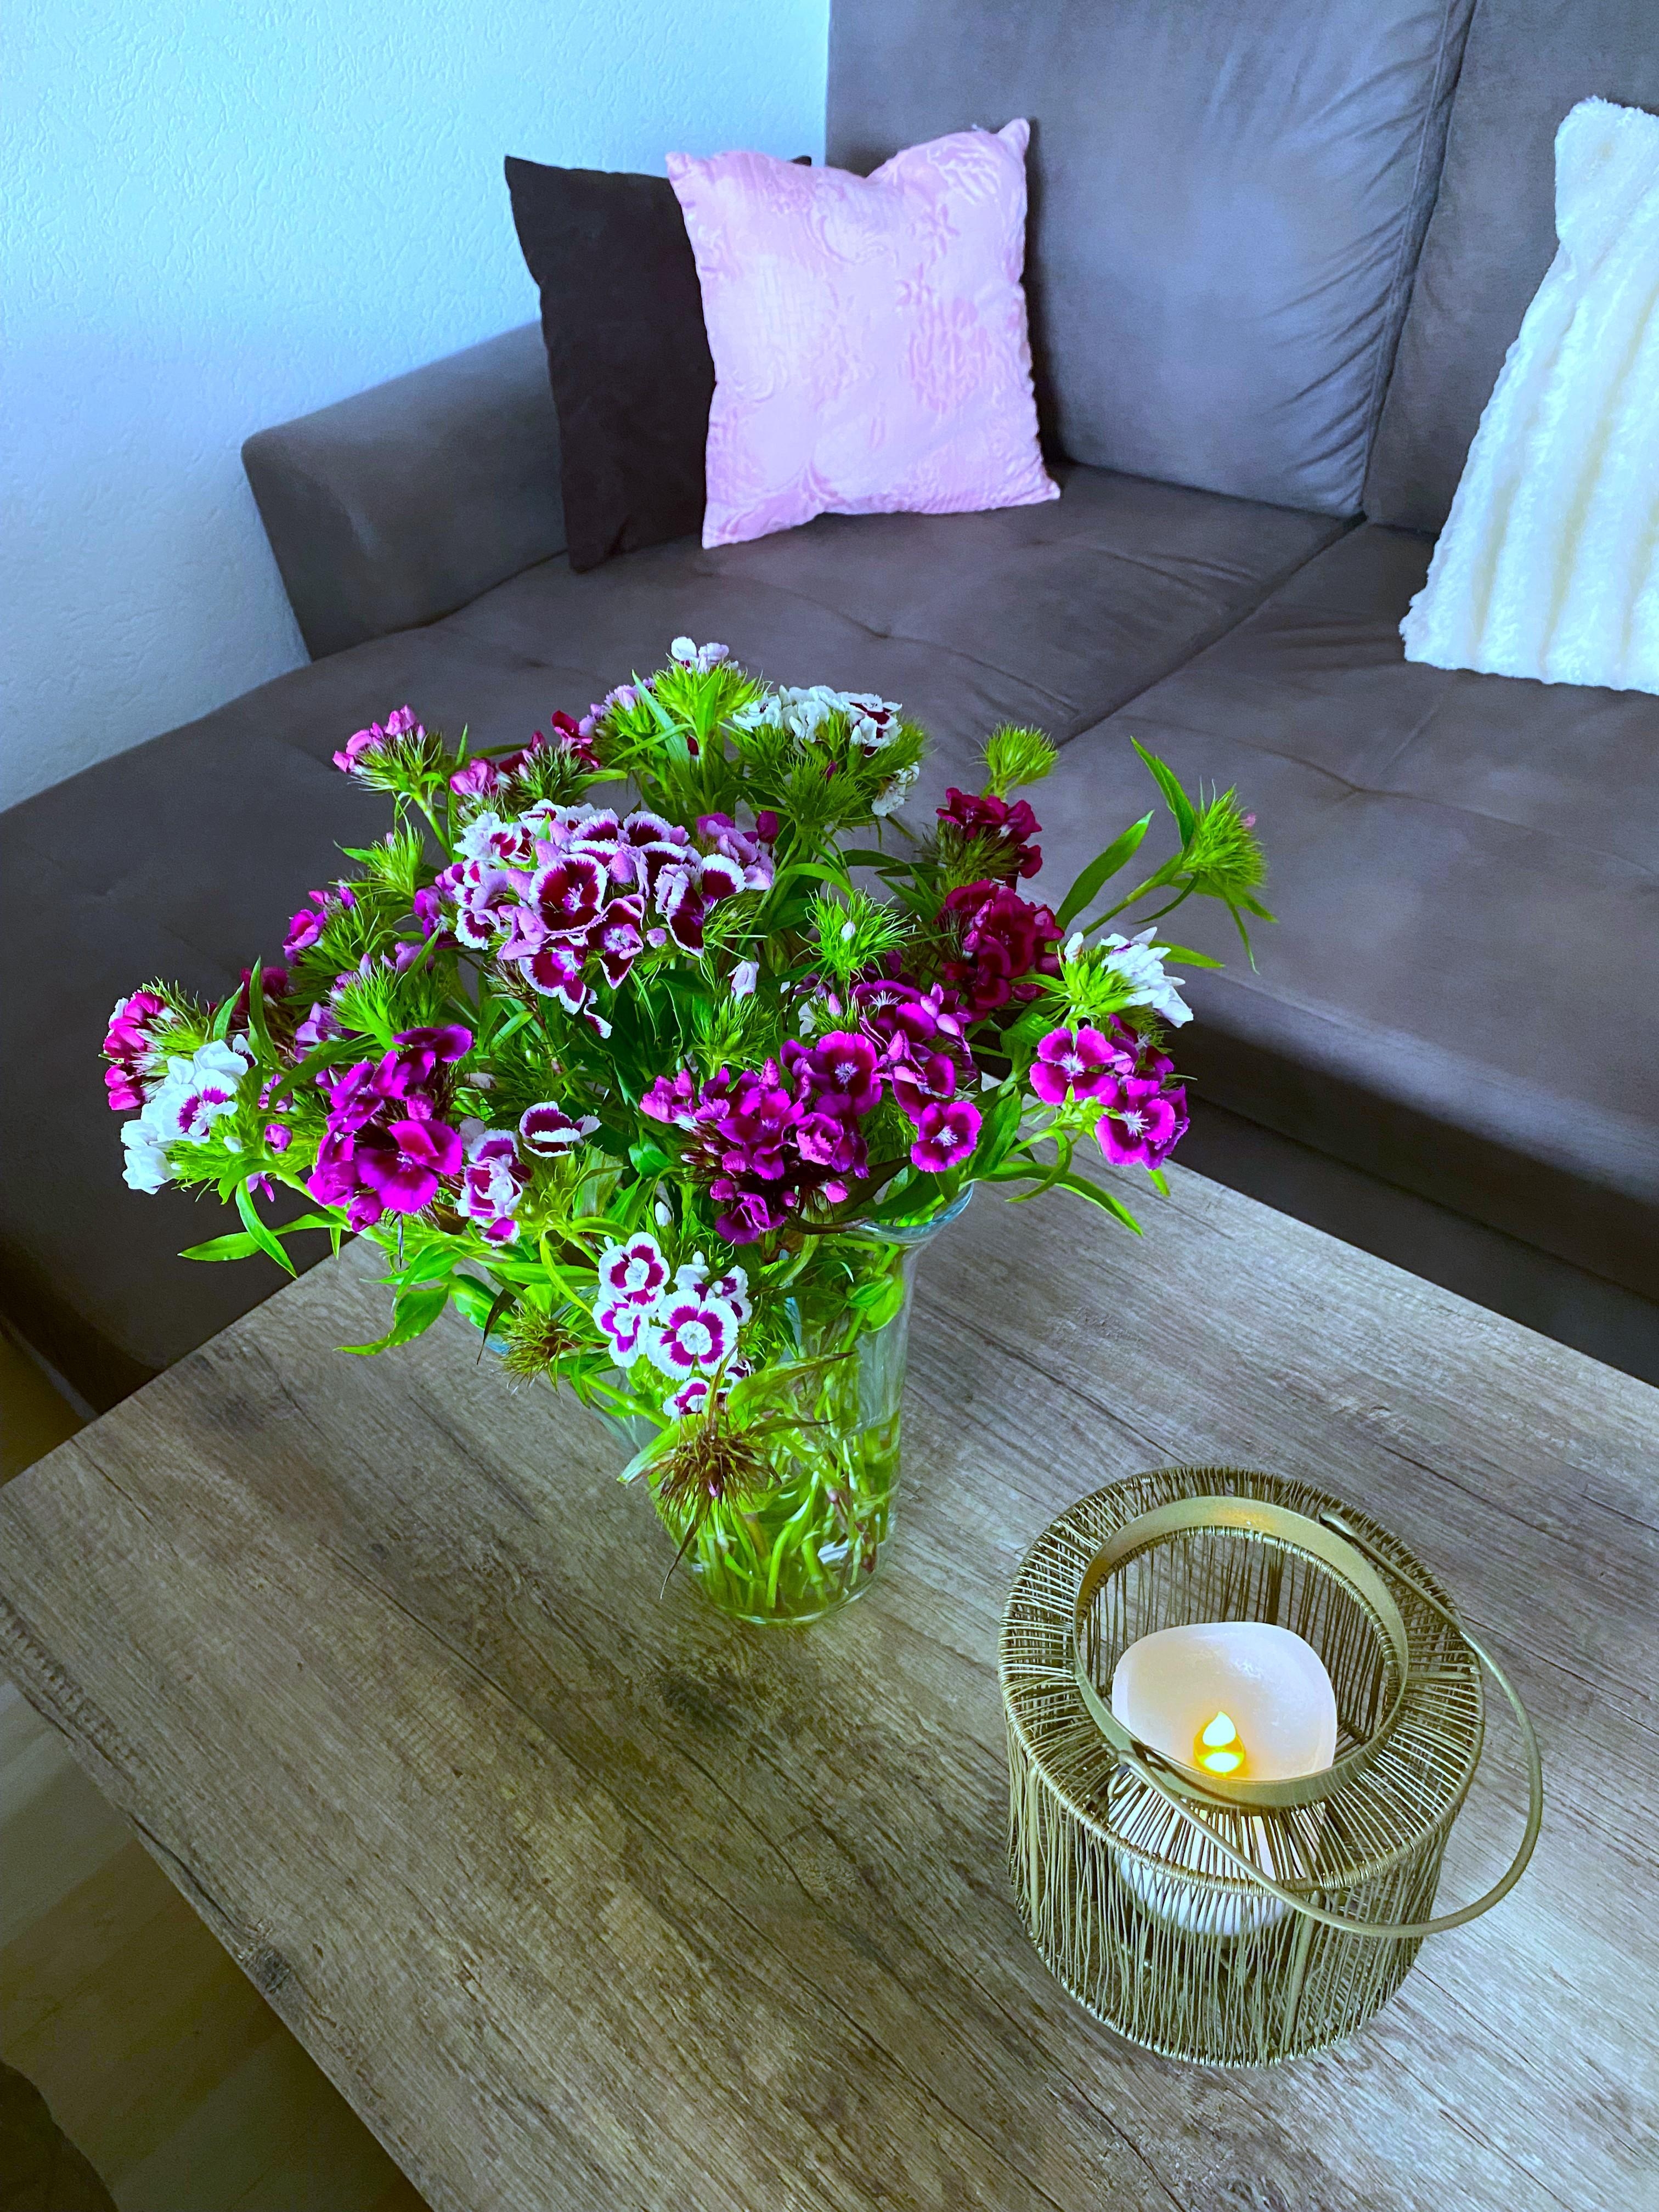 #bartnelken #bunt #frischblumen #garten #vase #wohnzimmer
Blumen aus dem Garten und sie halten bis zu 14 Tage in der Vase 